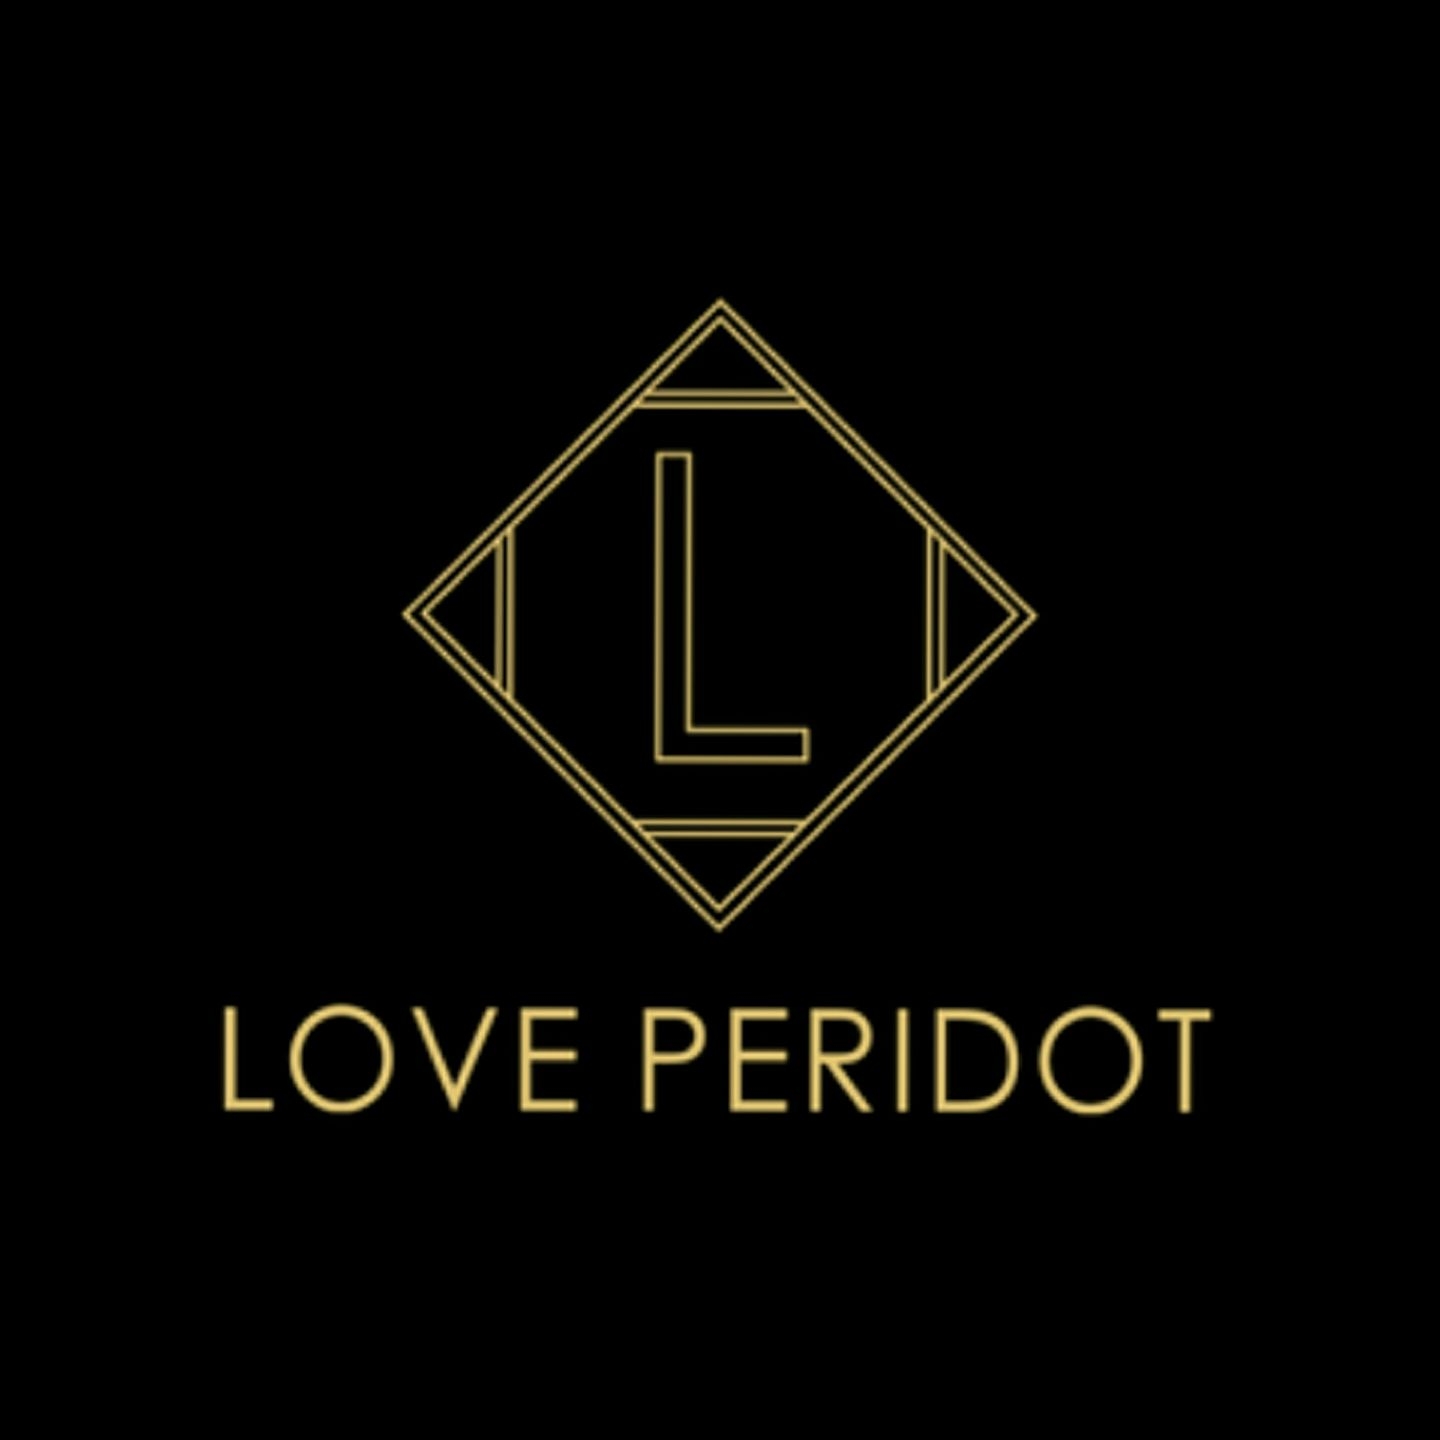 Love Peridot